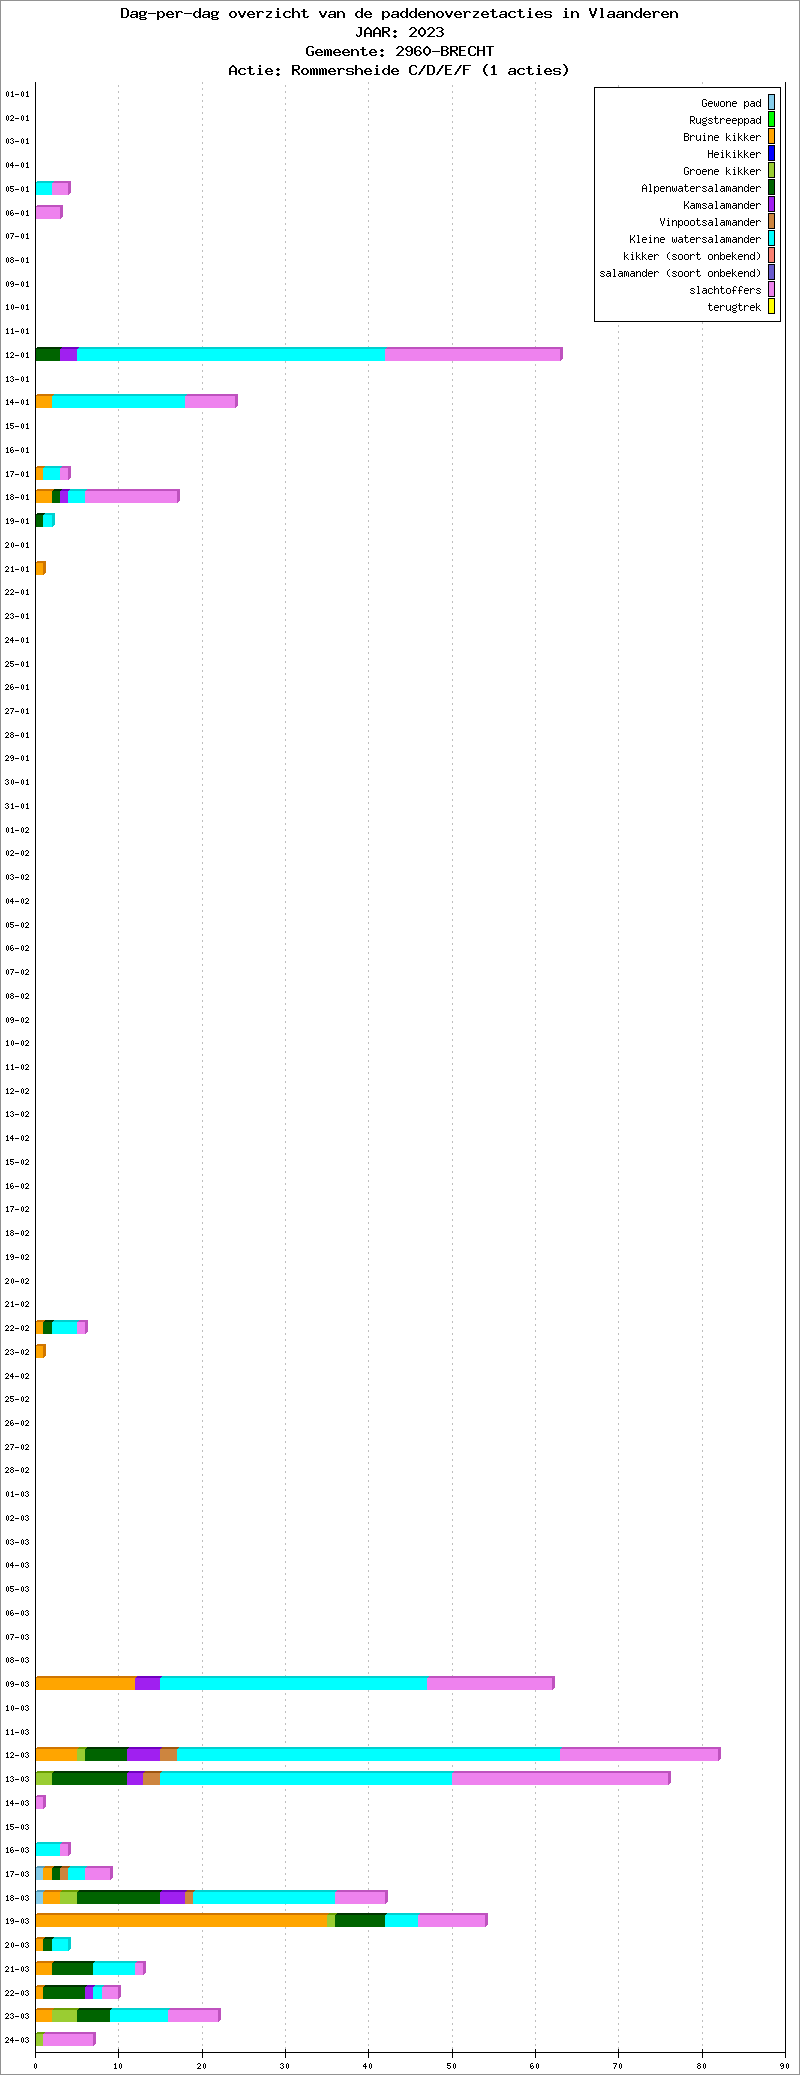 Dag-per-dag overzicht 2023 - Rommersheide C/D/E/F